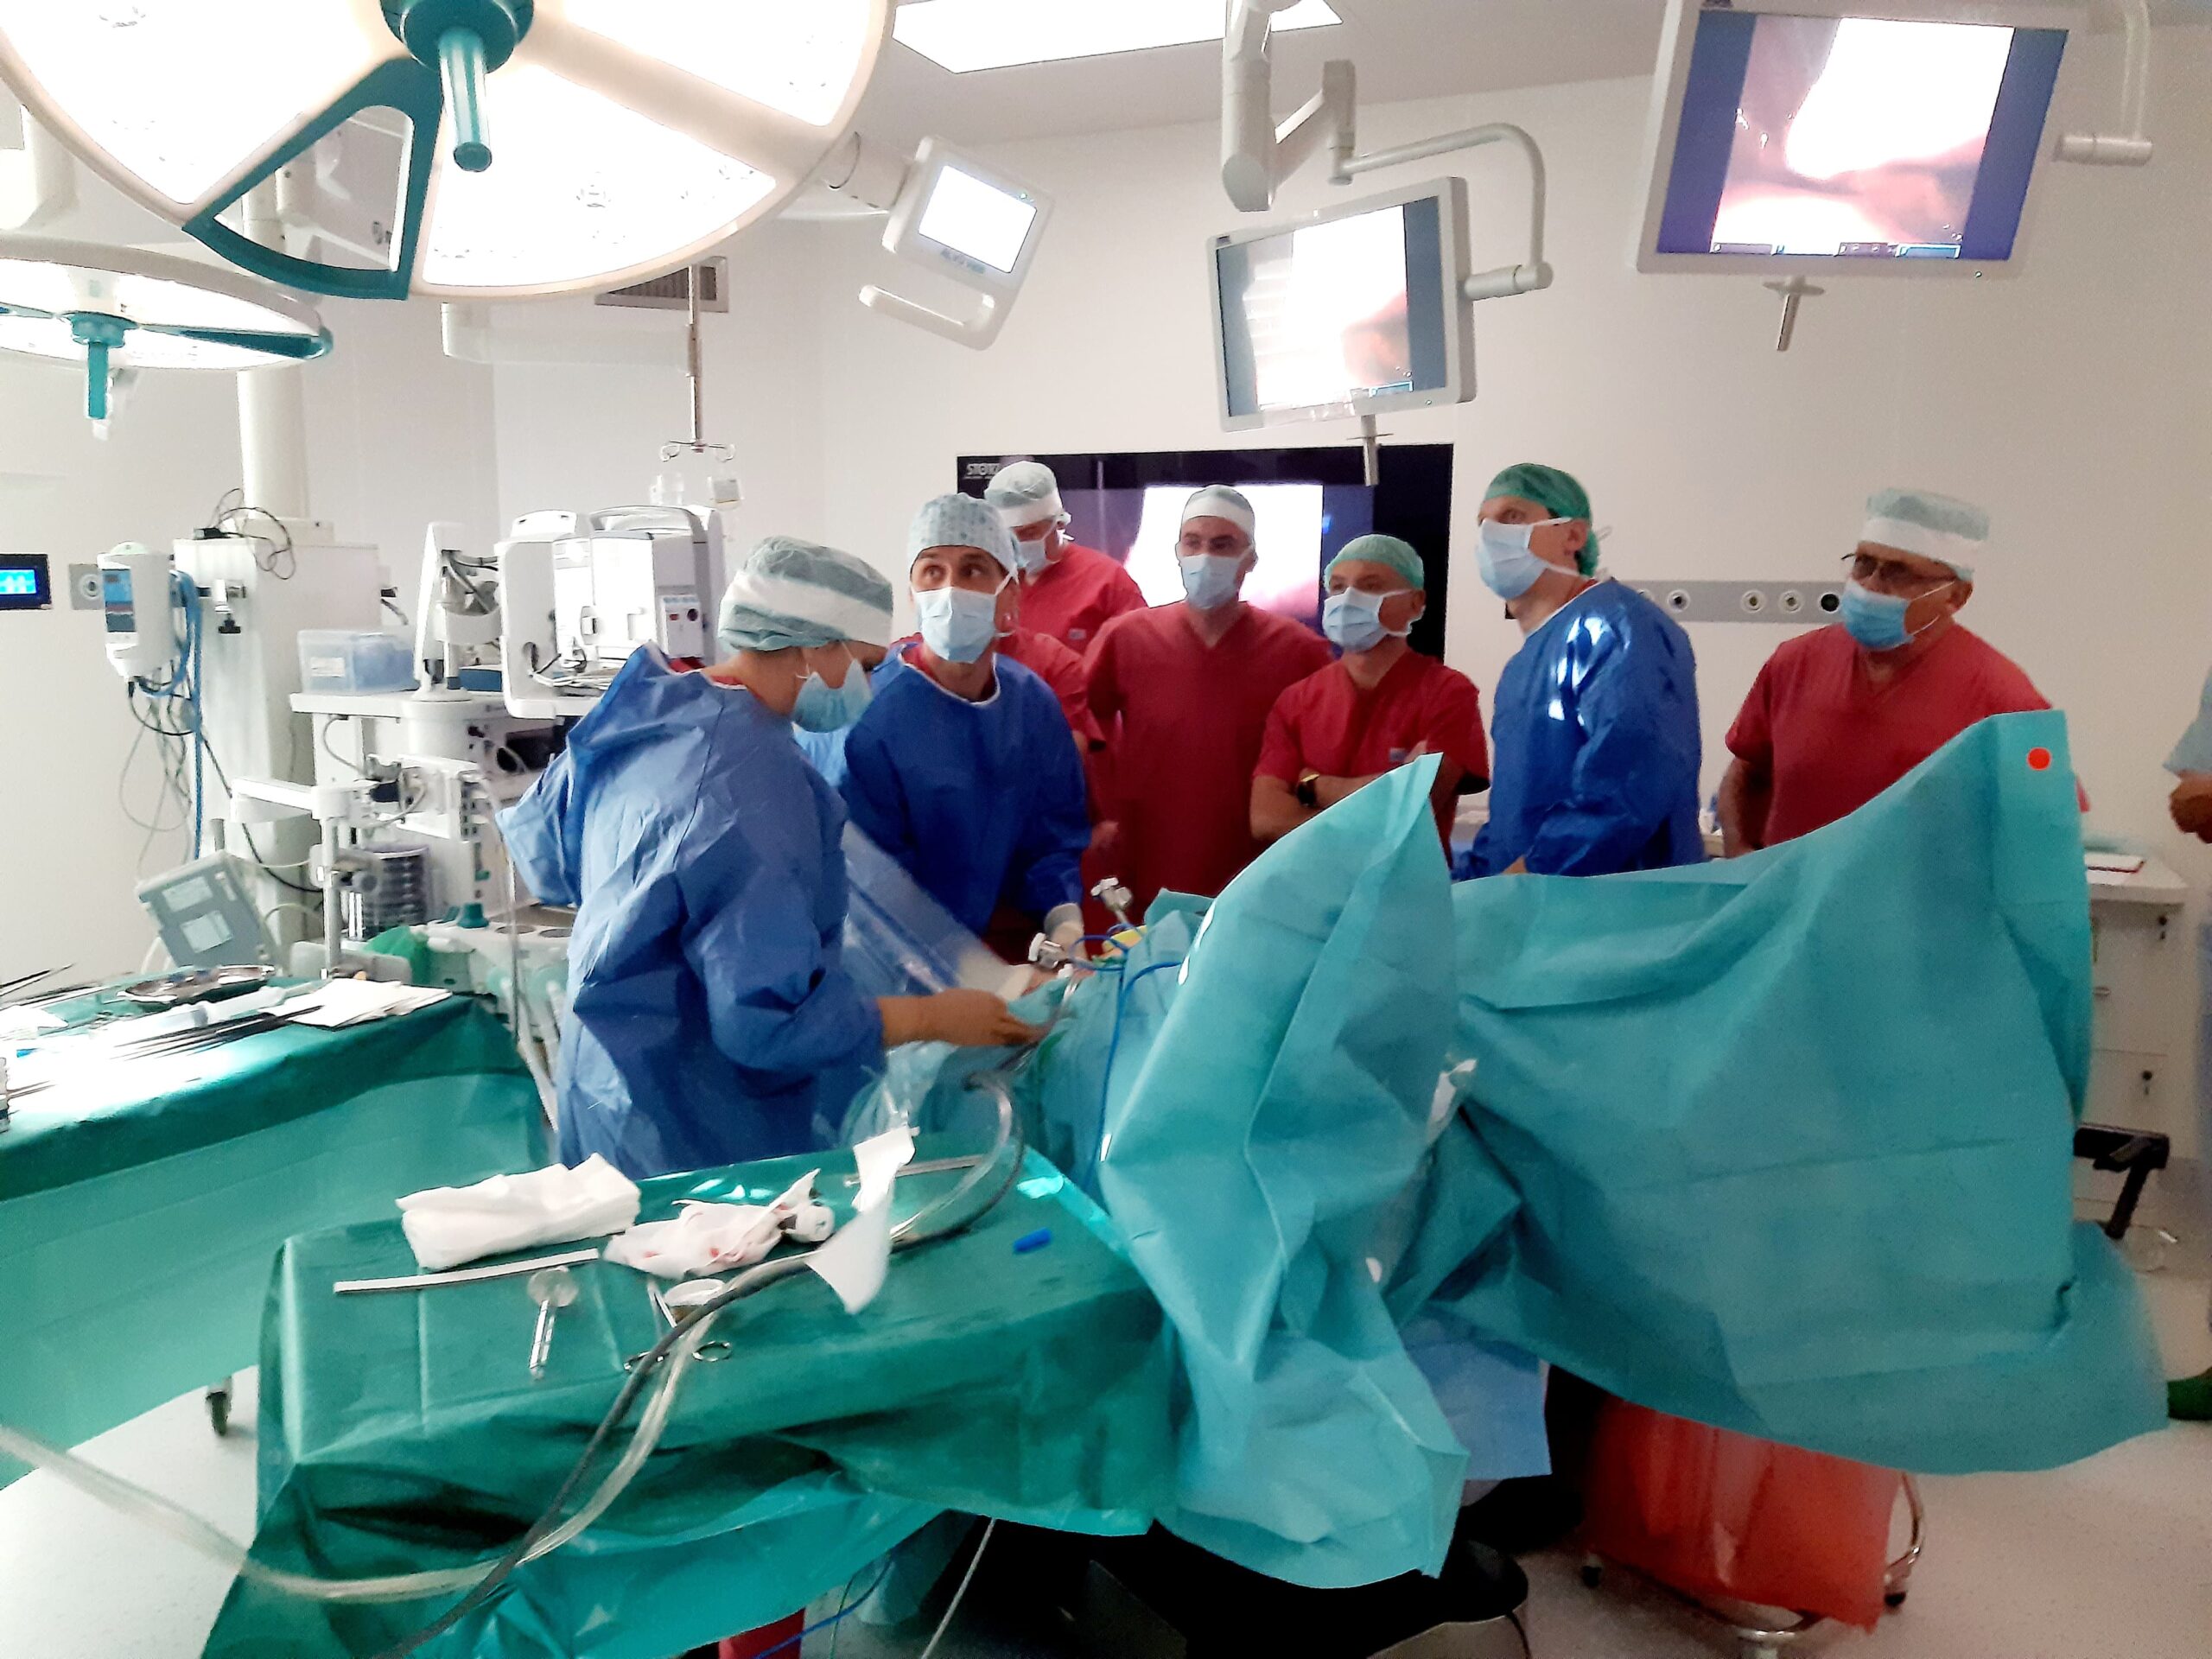 Po 3-godzinnej operacji przy użyciu robota pacjent z rakiem prostaty jest zdrowy